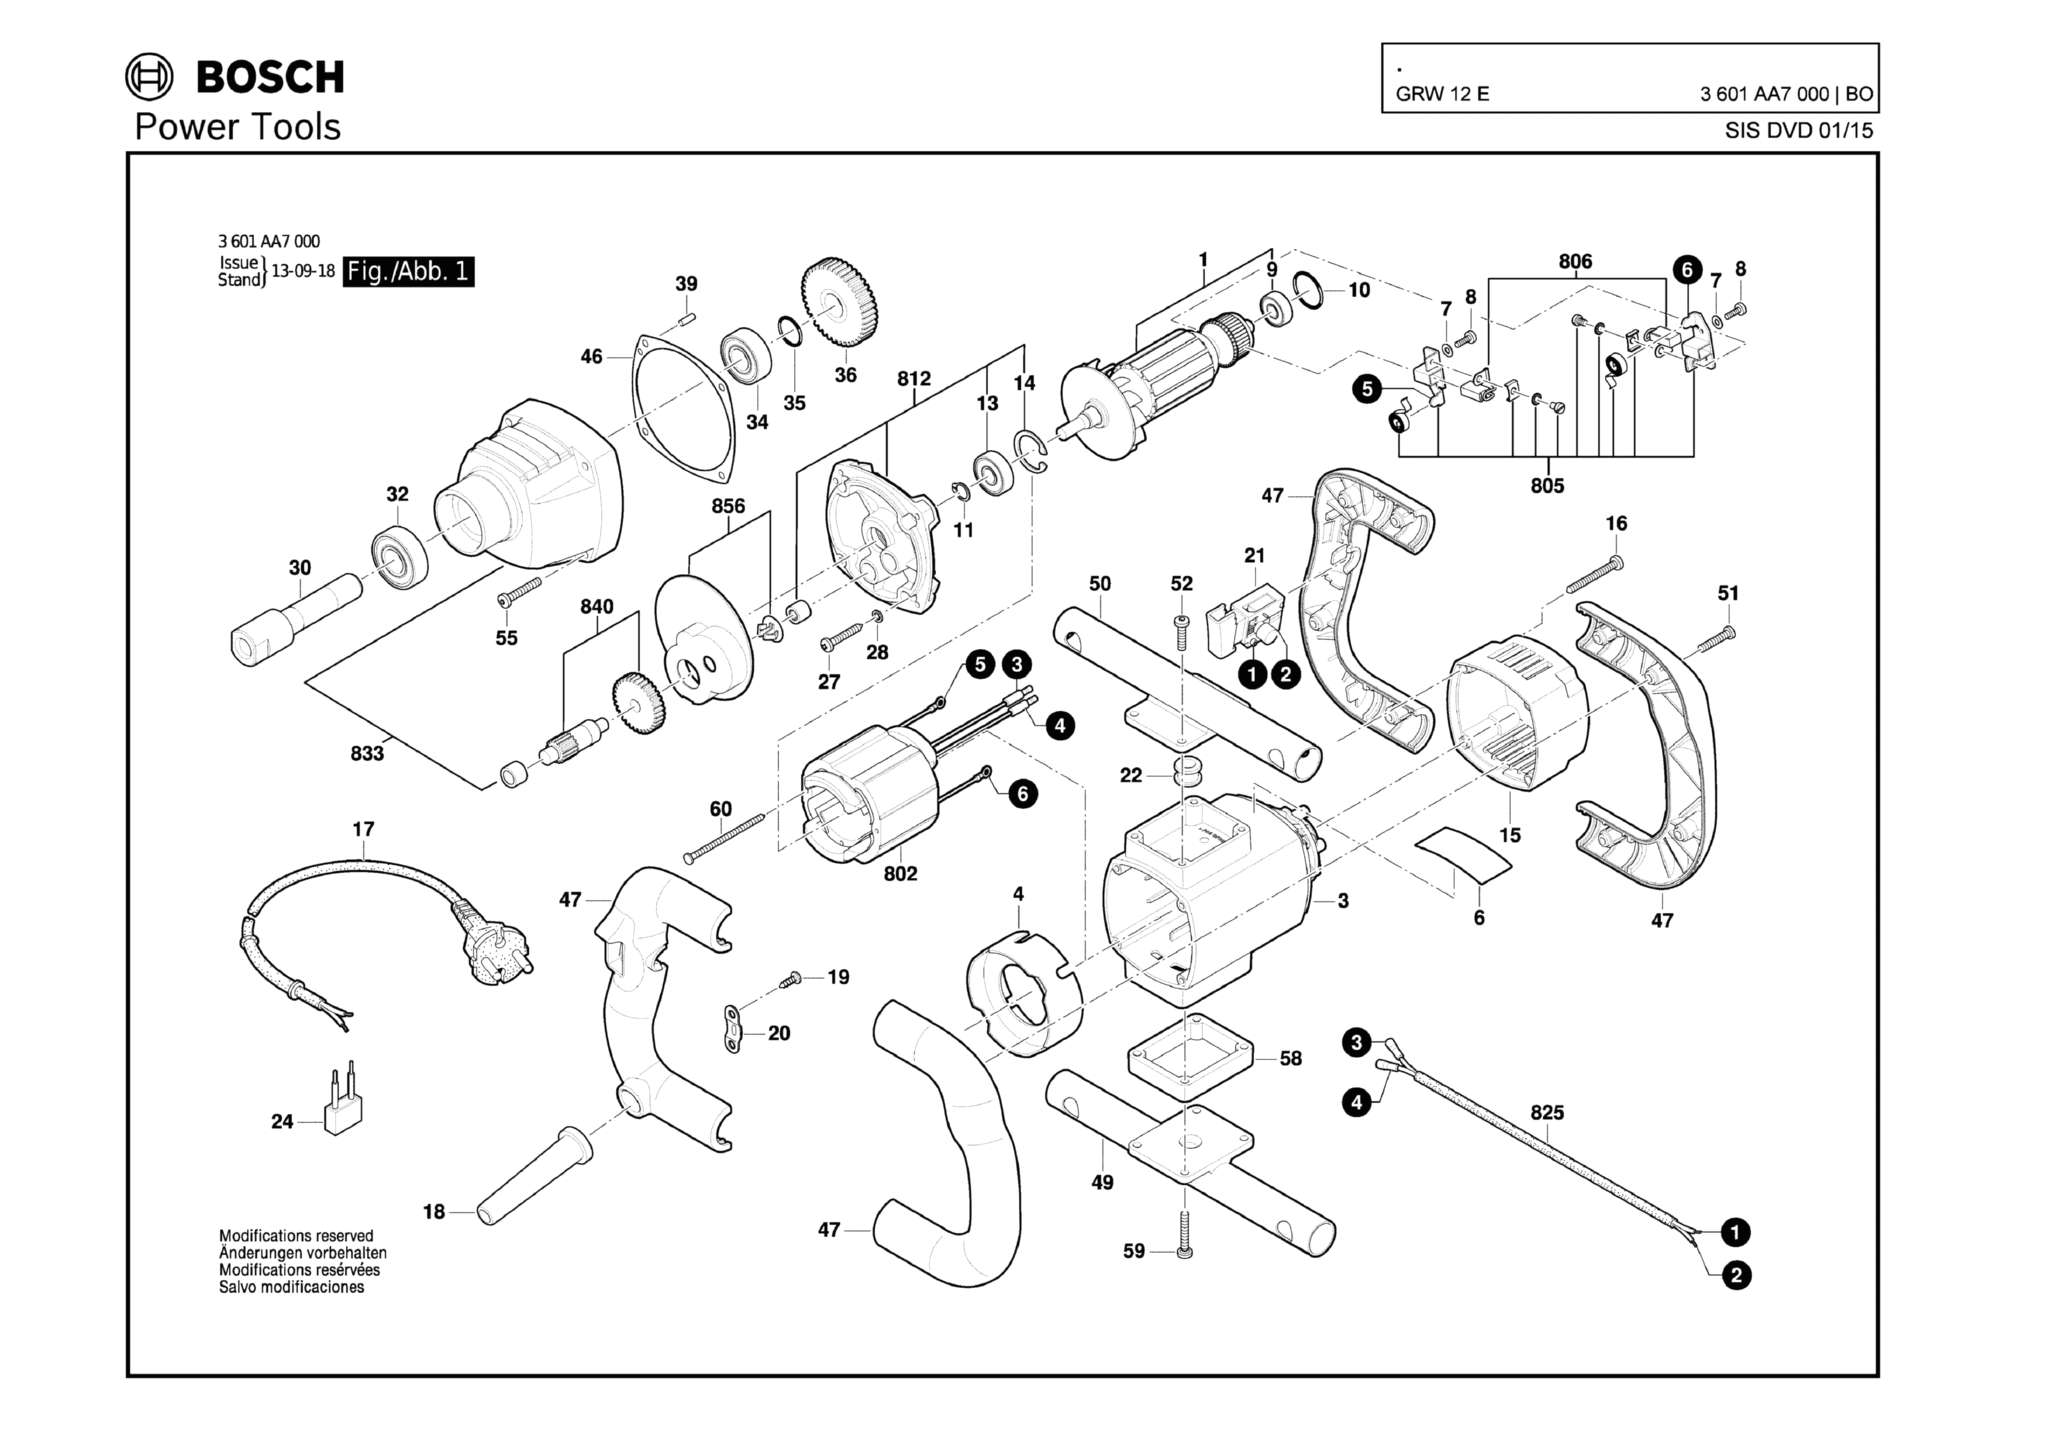 Запчасти, схема и деталировка Bosch GRW 12 E (ТИП 3601AA7000)